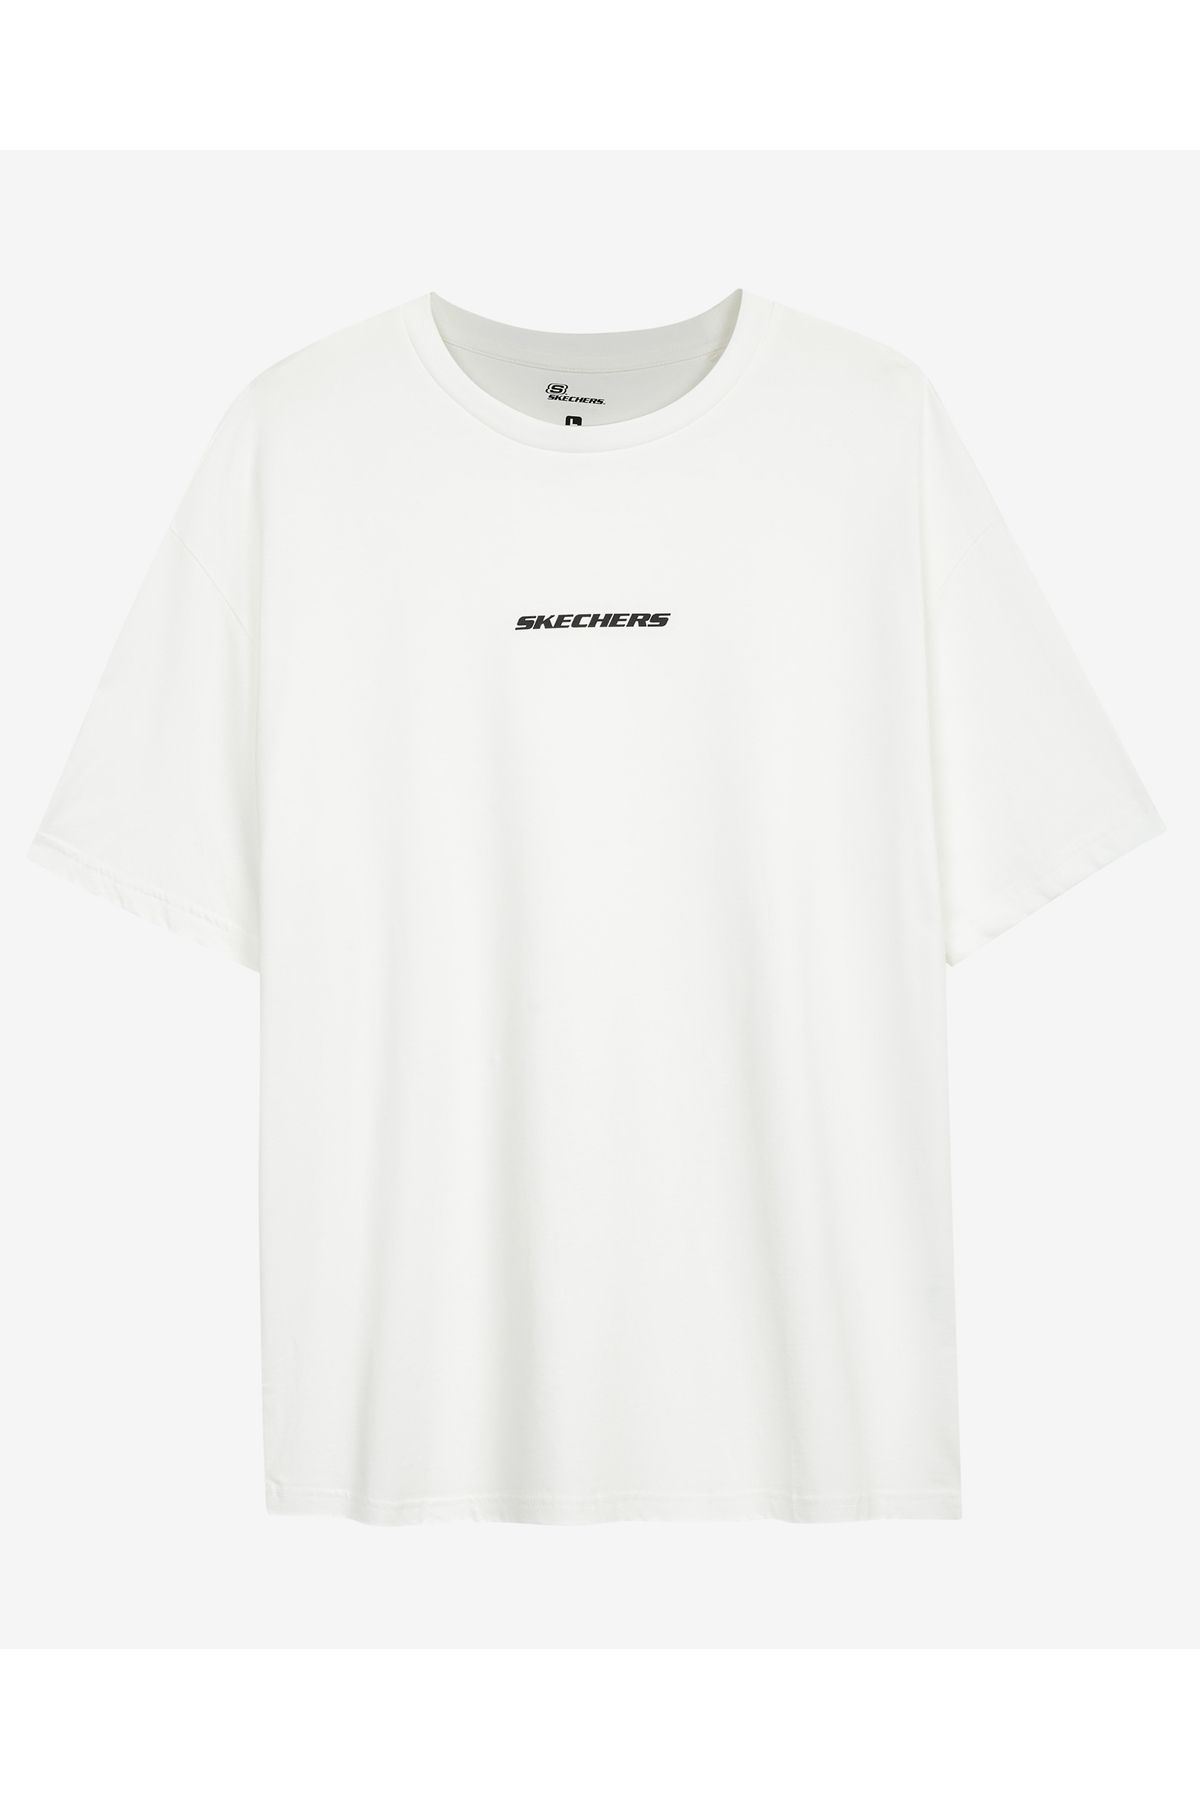 Skechers M Graphic Tee Oversize T-shirt Erkek Beyaz Tshirt S232404-100